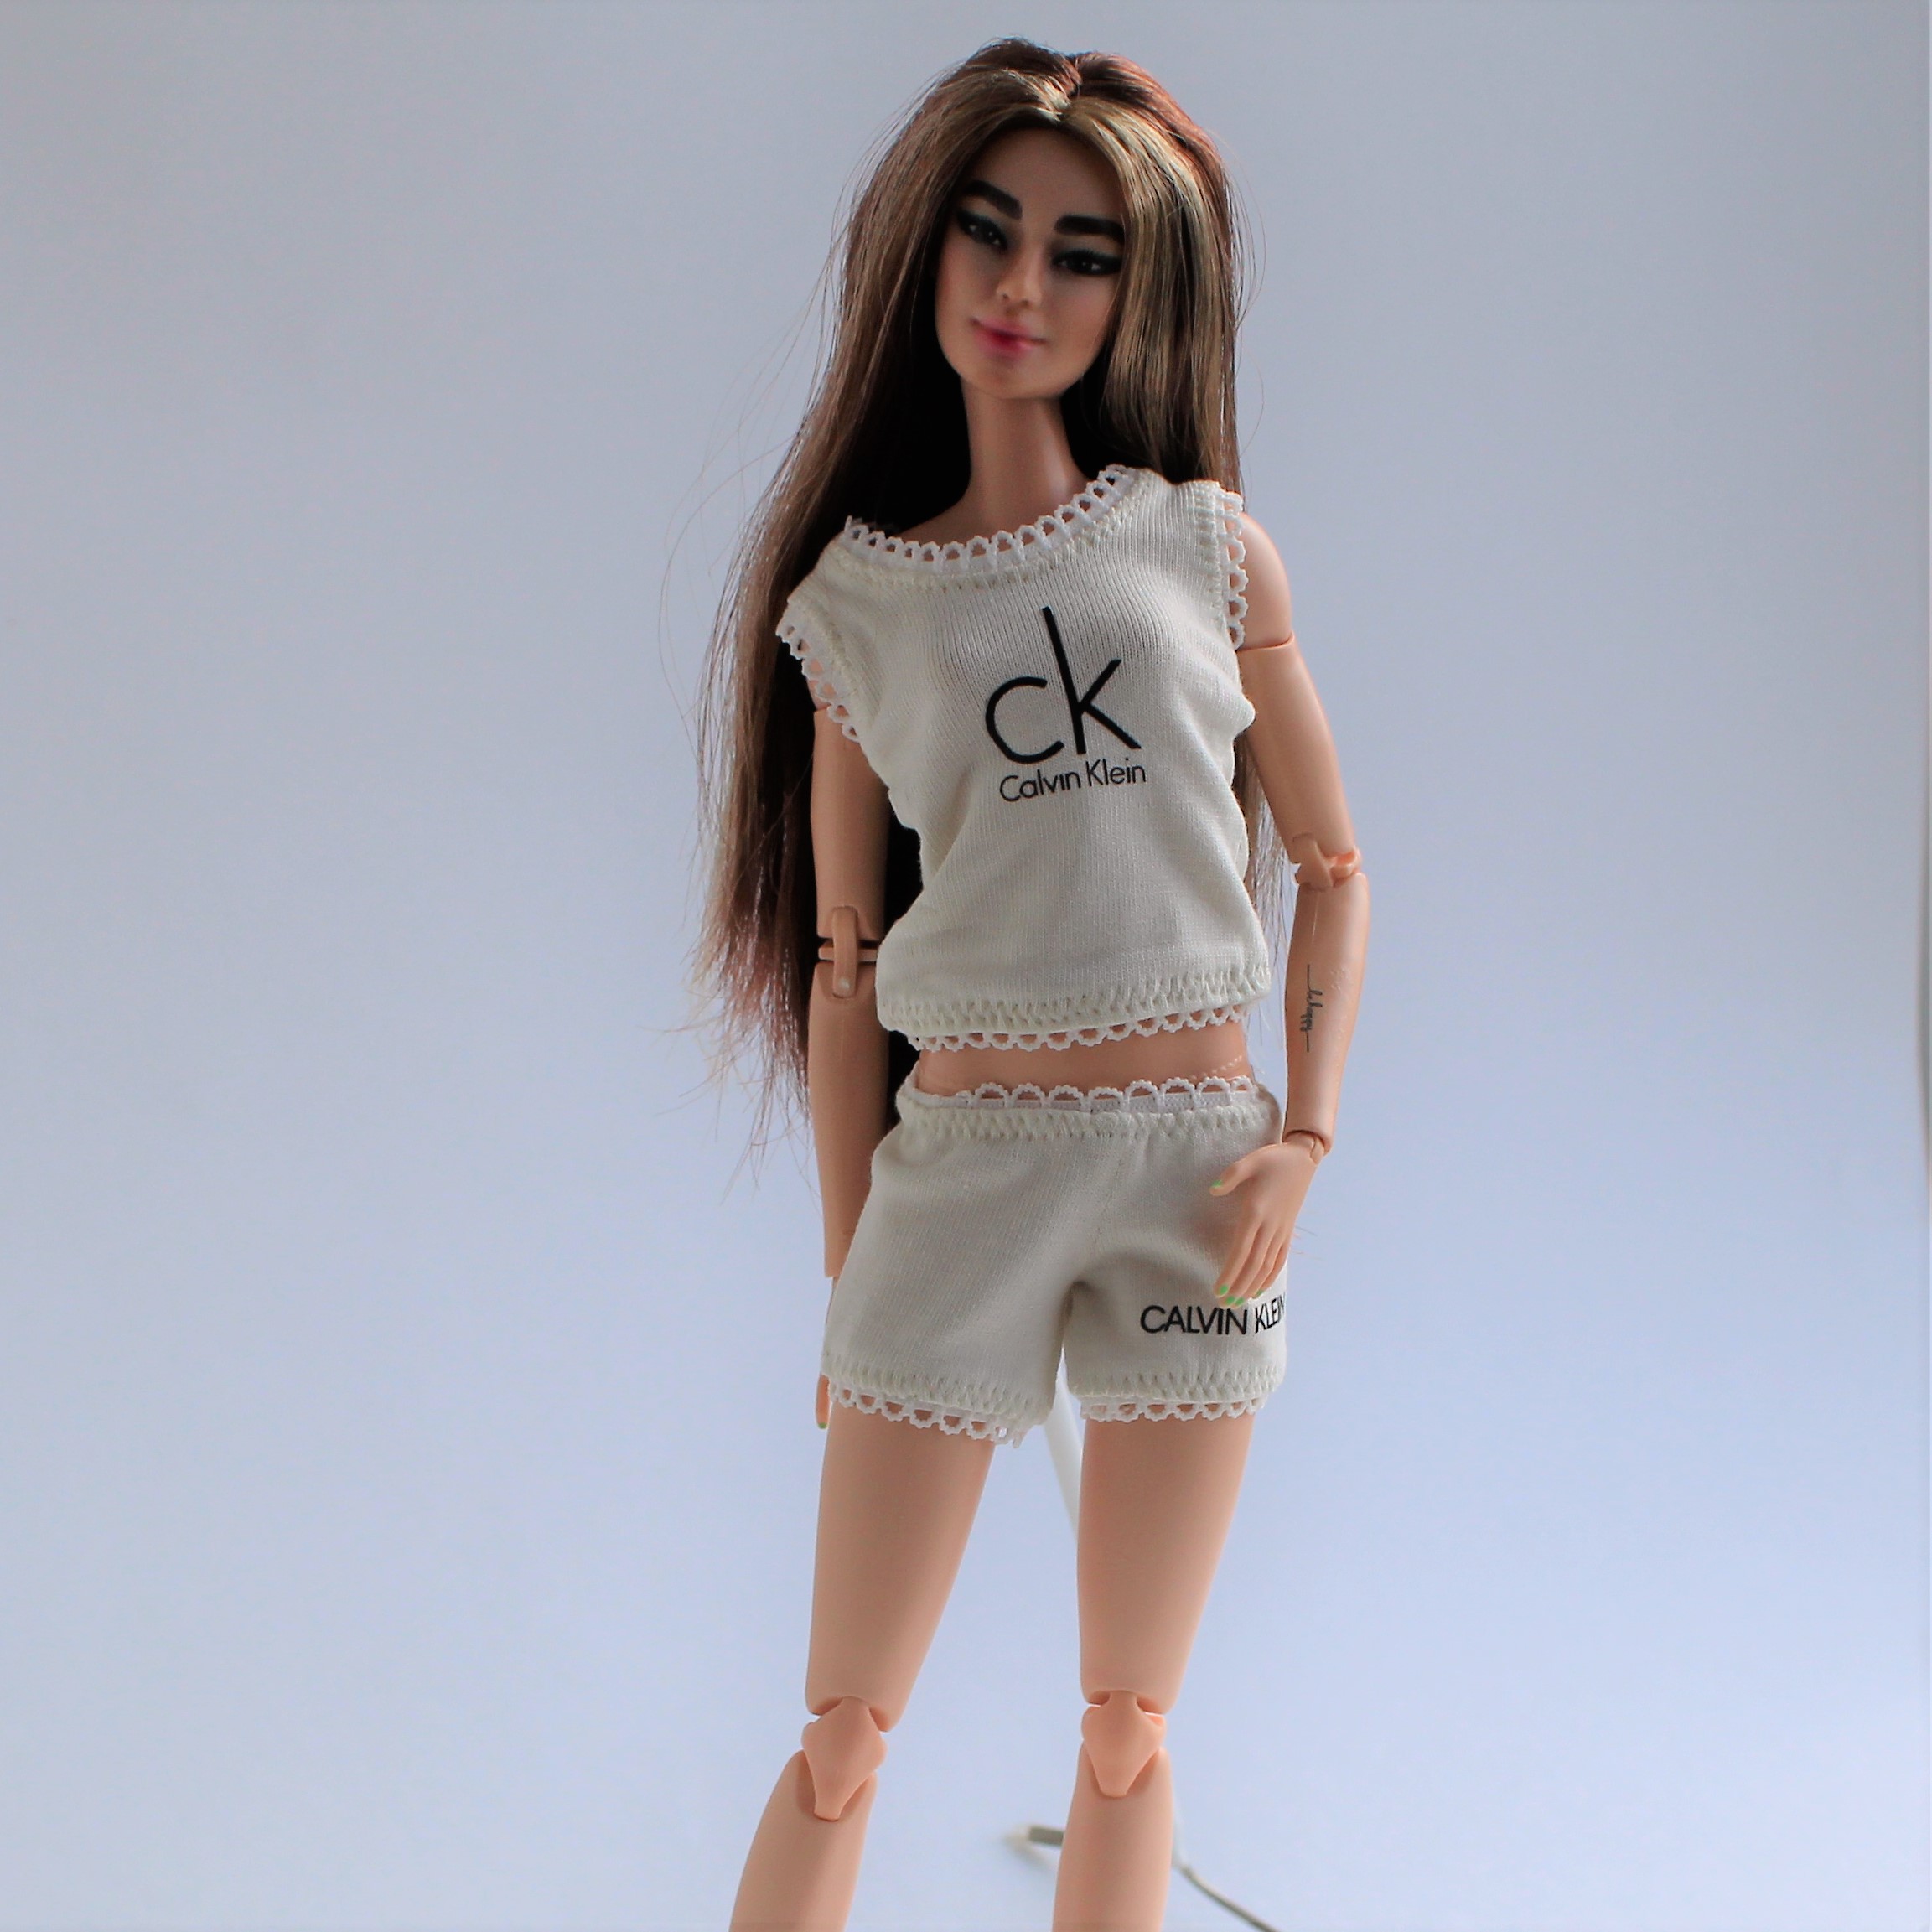 Kit 2 - Barbie - Moldes em pdf para Roupas de Boneca.